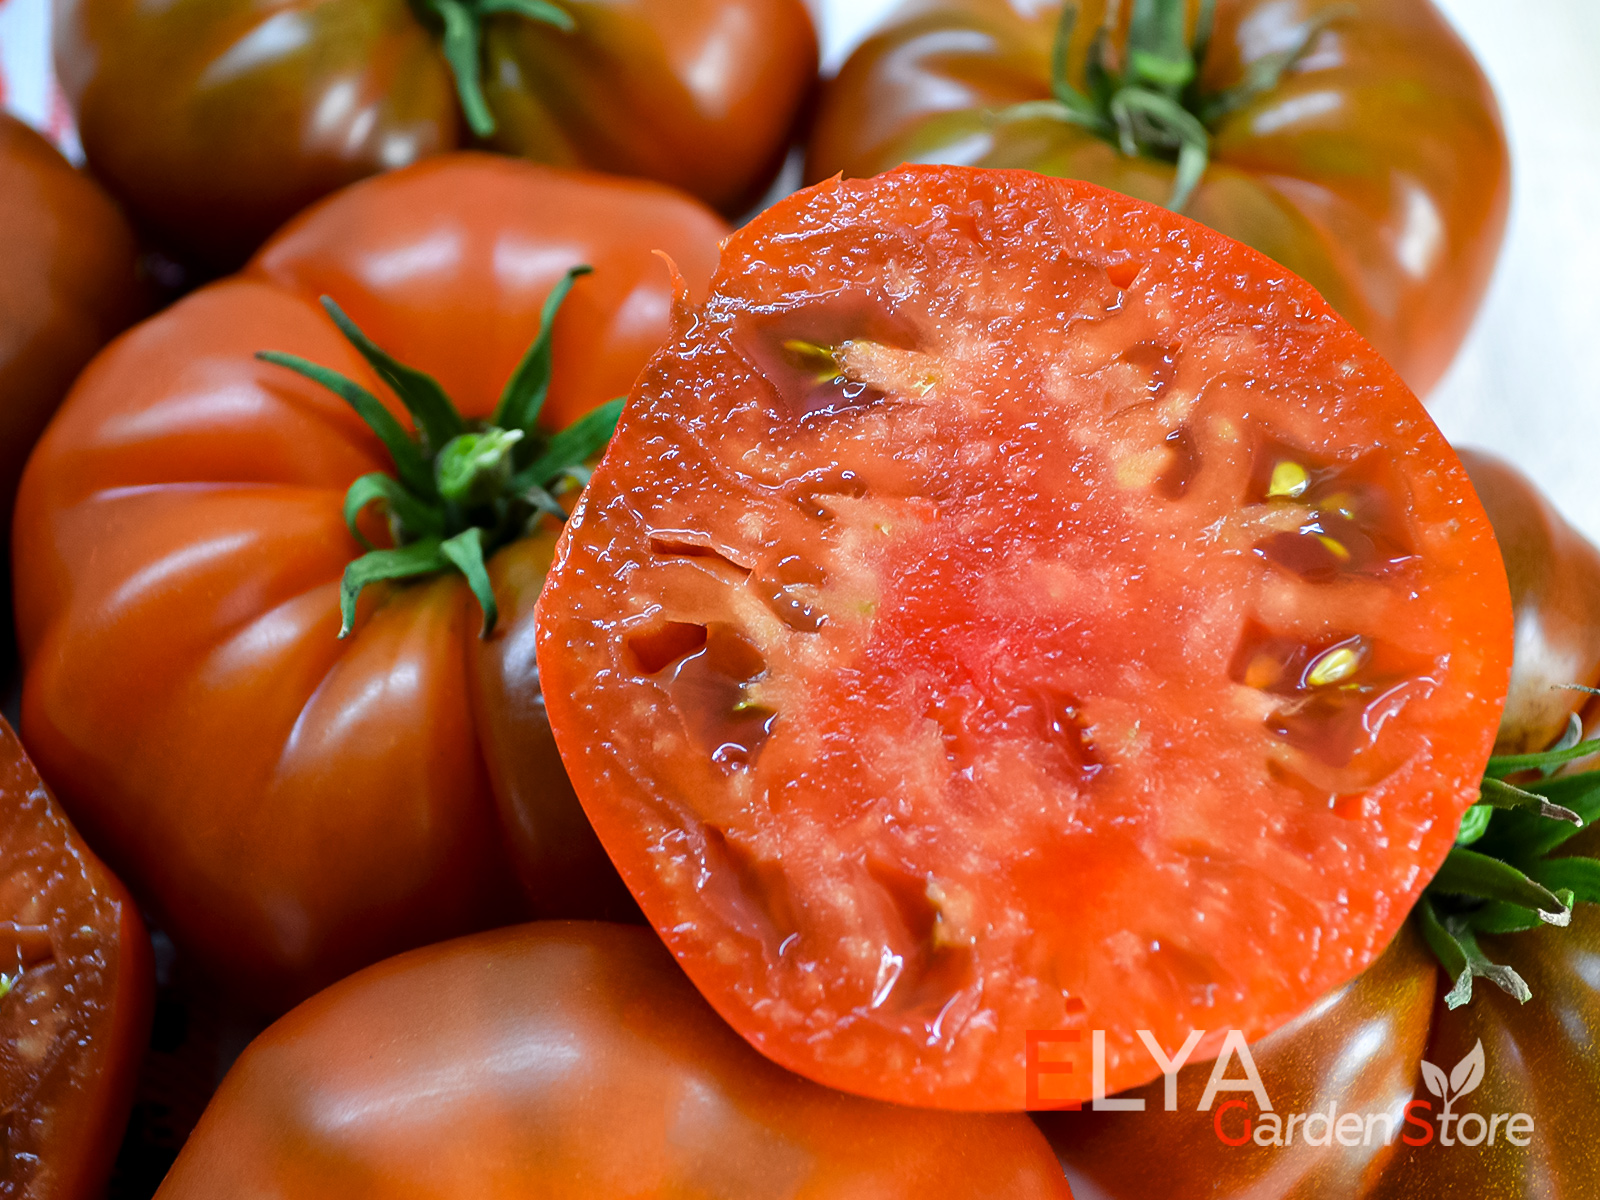 Адора - темноплодный сорт томата, урожайный, неприхотливый, очень вкусный - фото магазина семян Elya Garden 